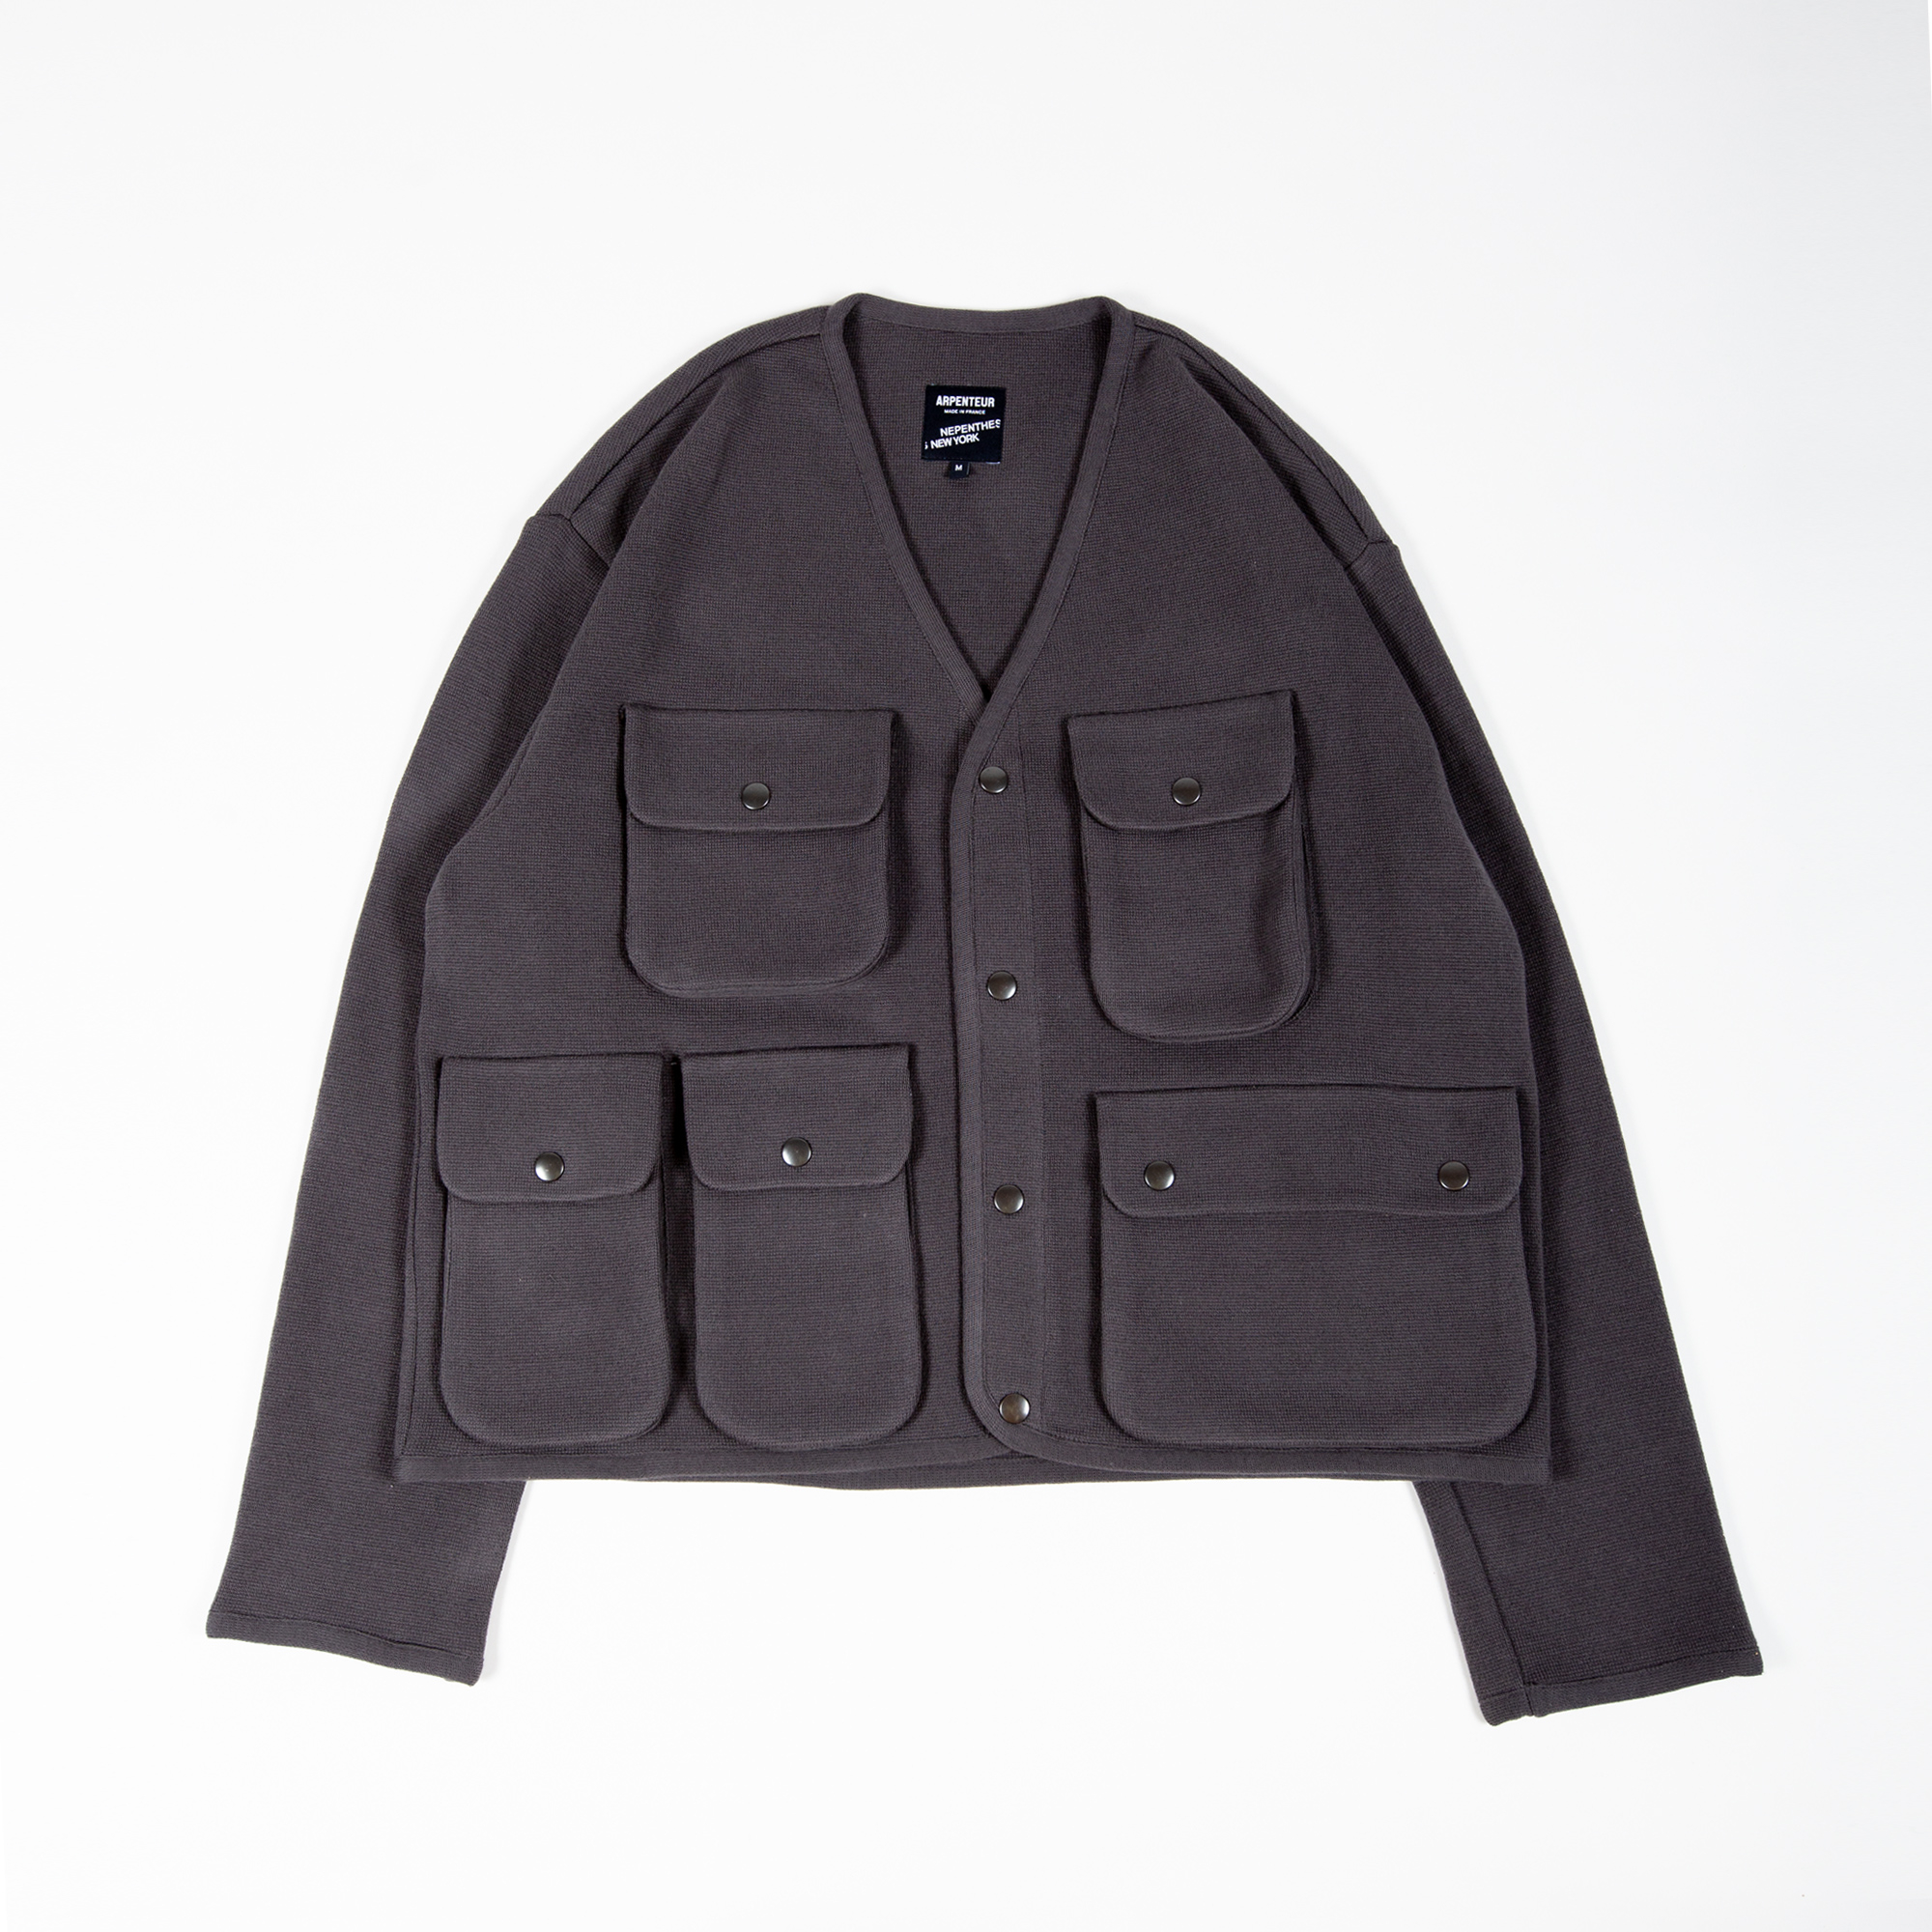 Utility Knit jacket par Arpenteur pour Nepenthes New York coloris Taupe